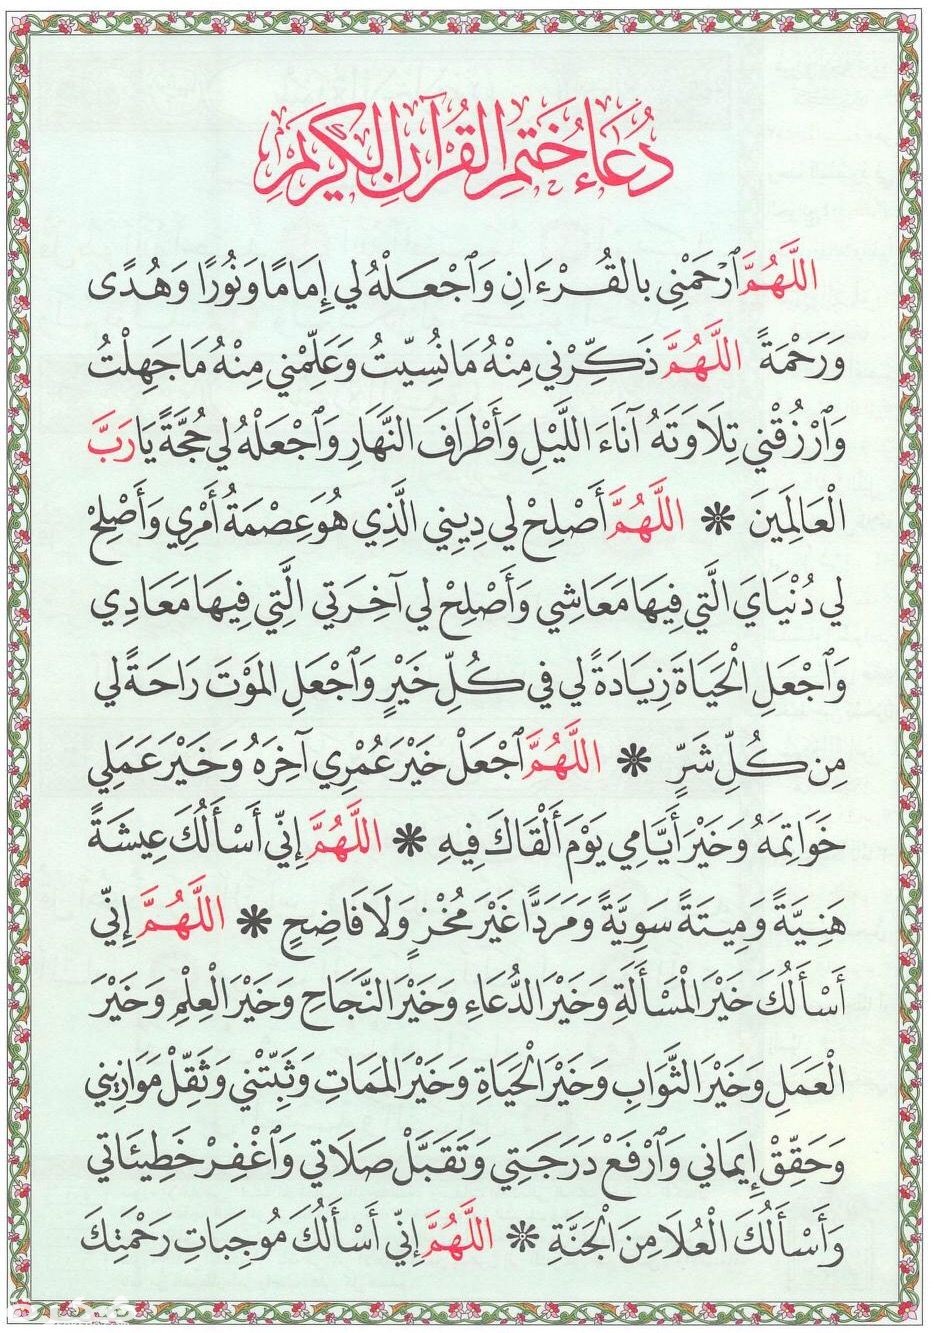 دعاء ختم القران مكتوب كاملا للقراءة في رمضان 1442 لابن تيميه ثقفني